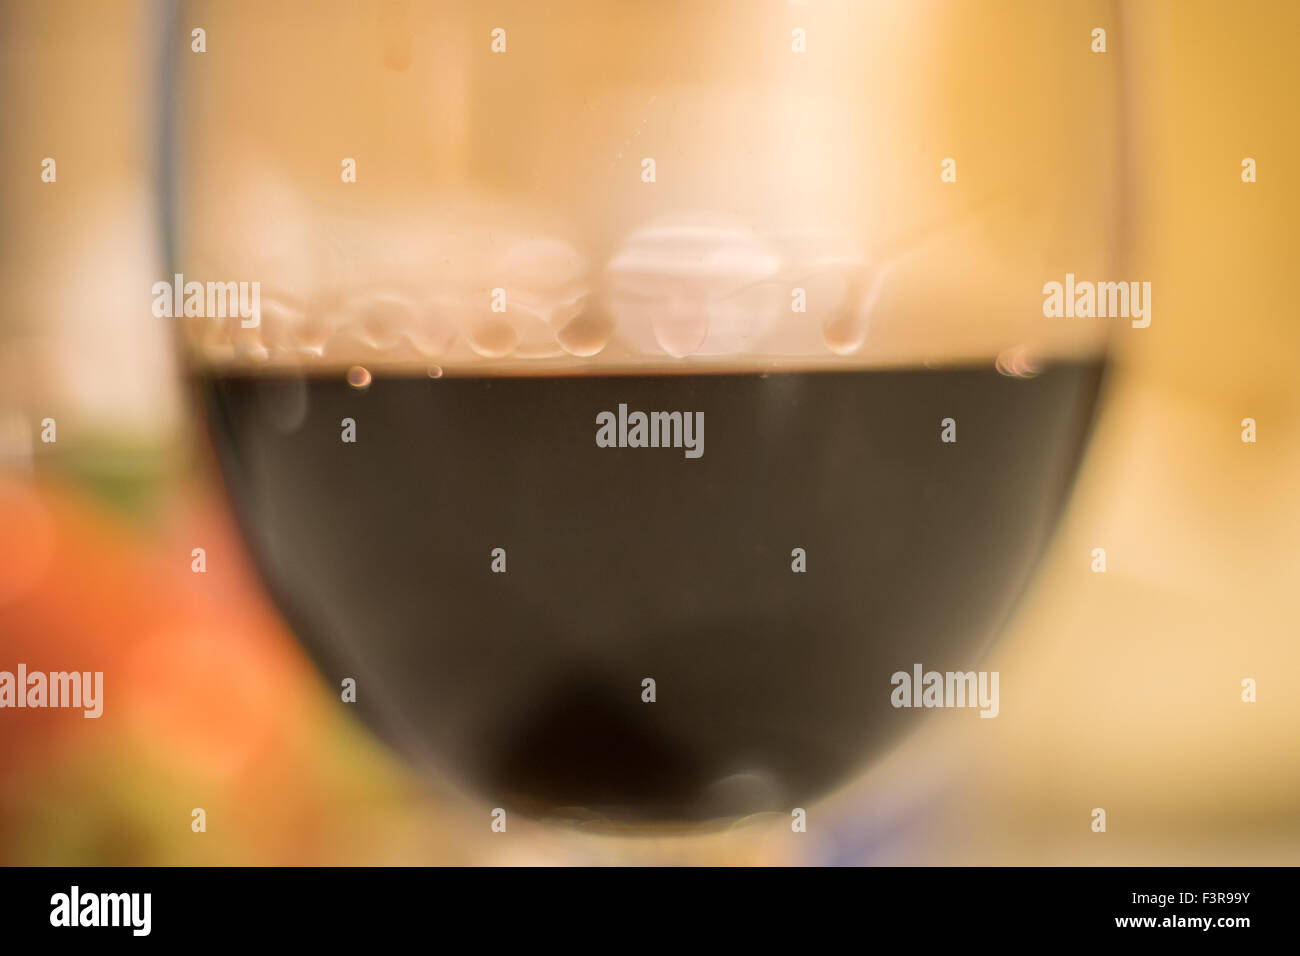 Copa de Vino con gotas de agua formadas por la tensión superficial del alcohol Foto de stock